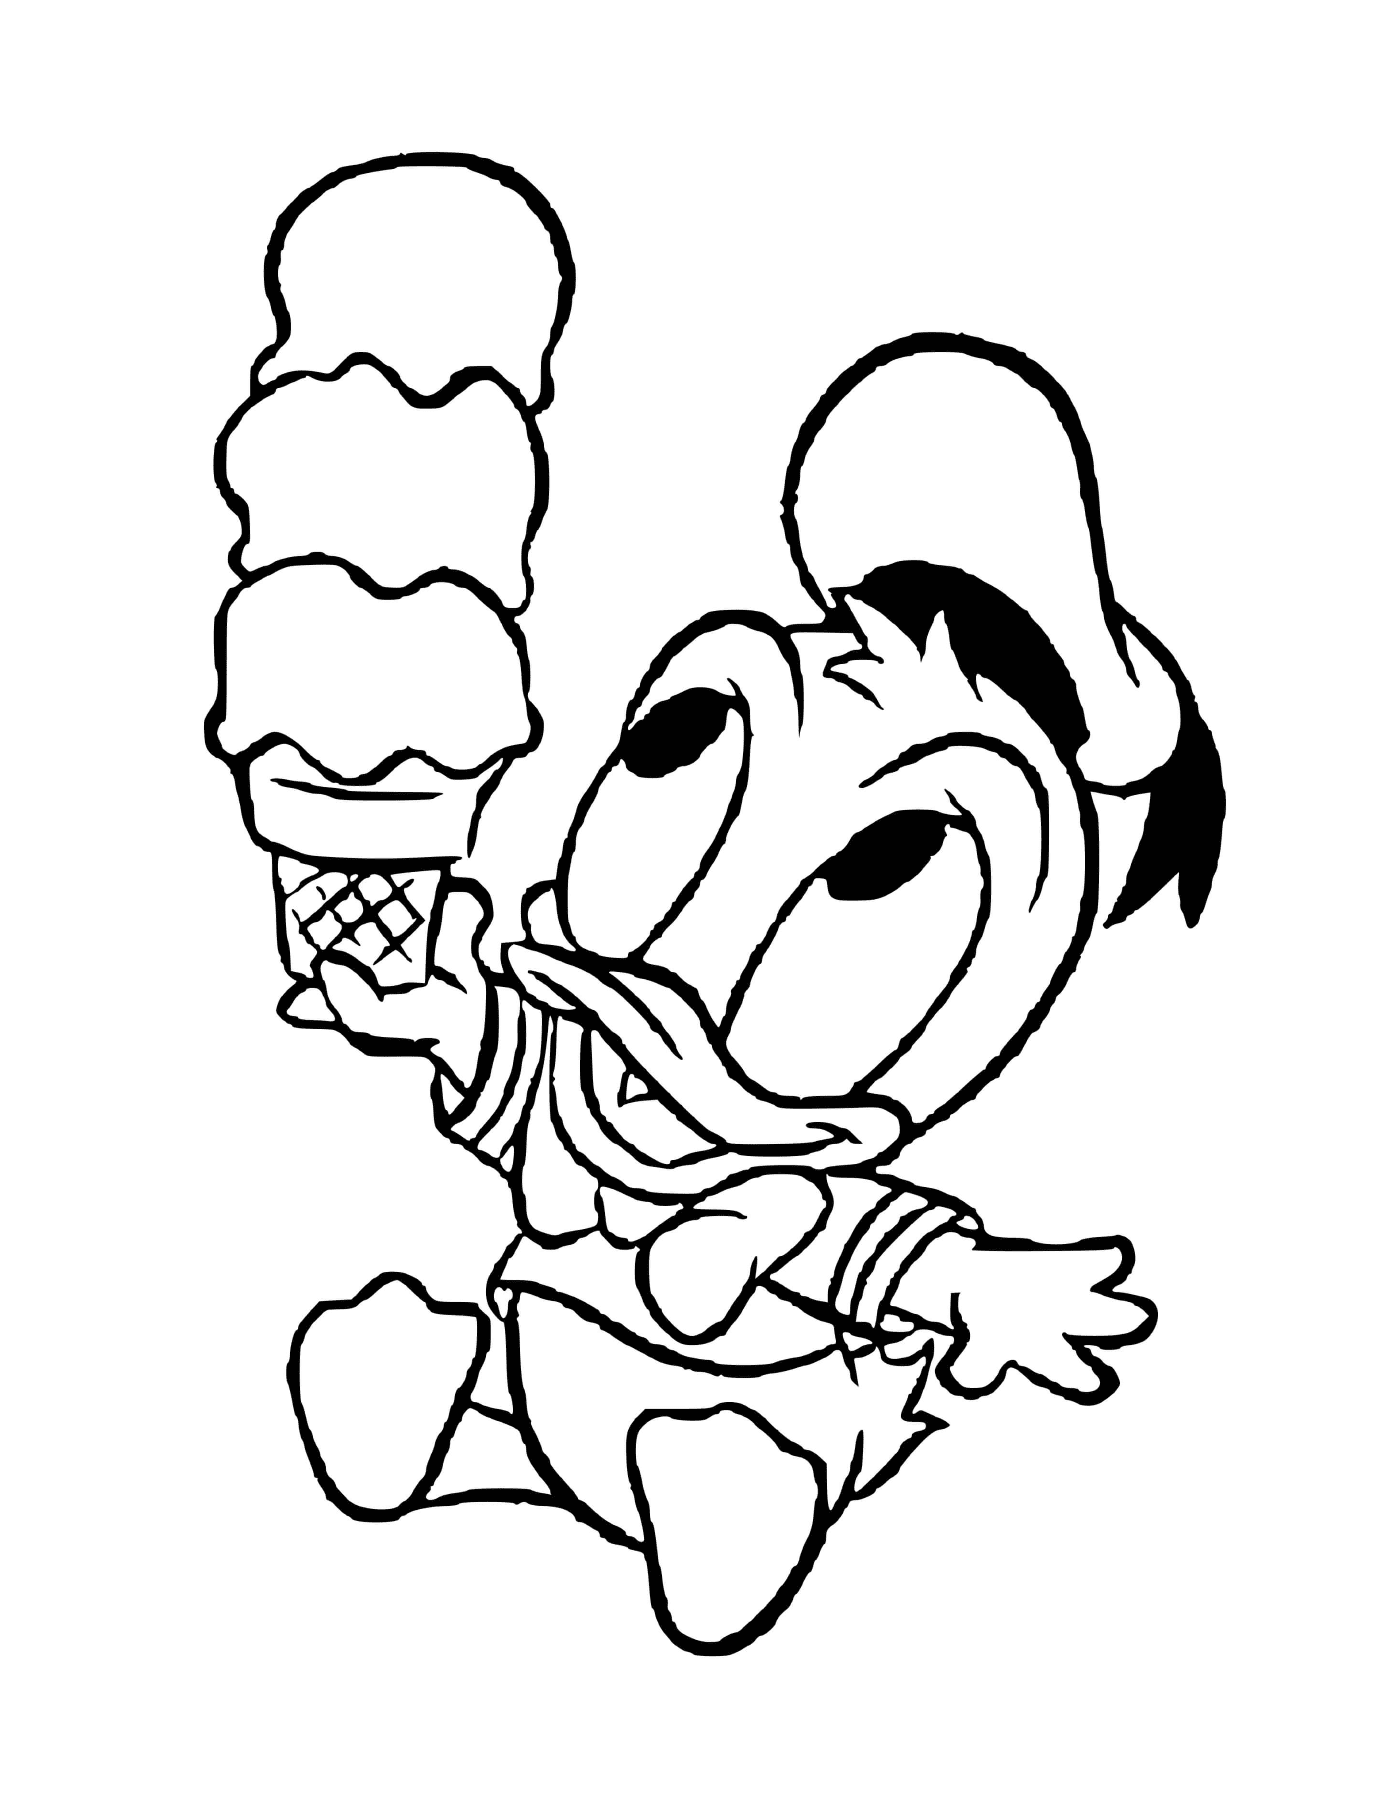  Donald Duck bebé ama el helado 